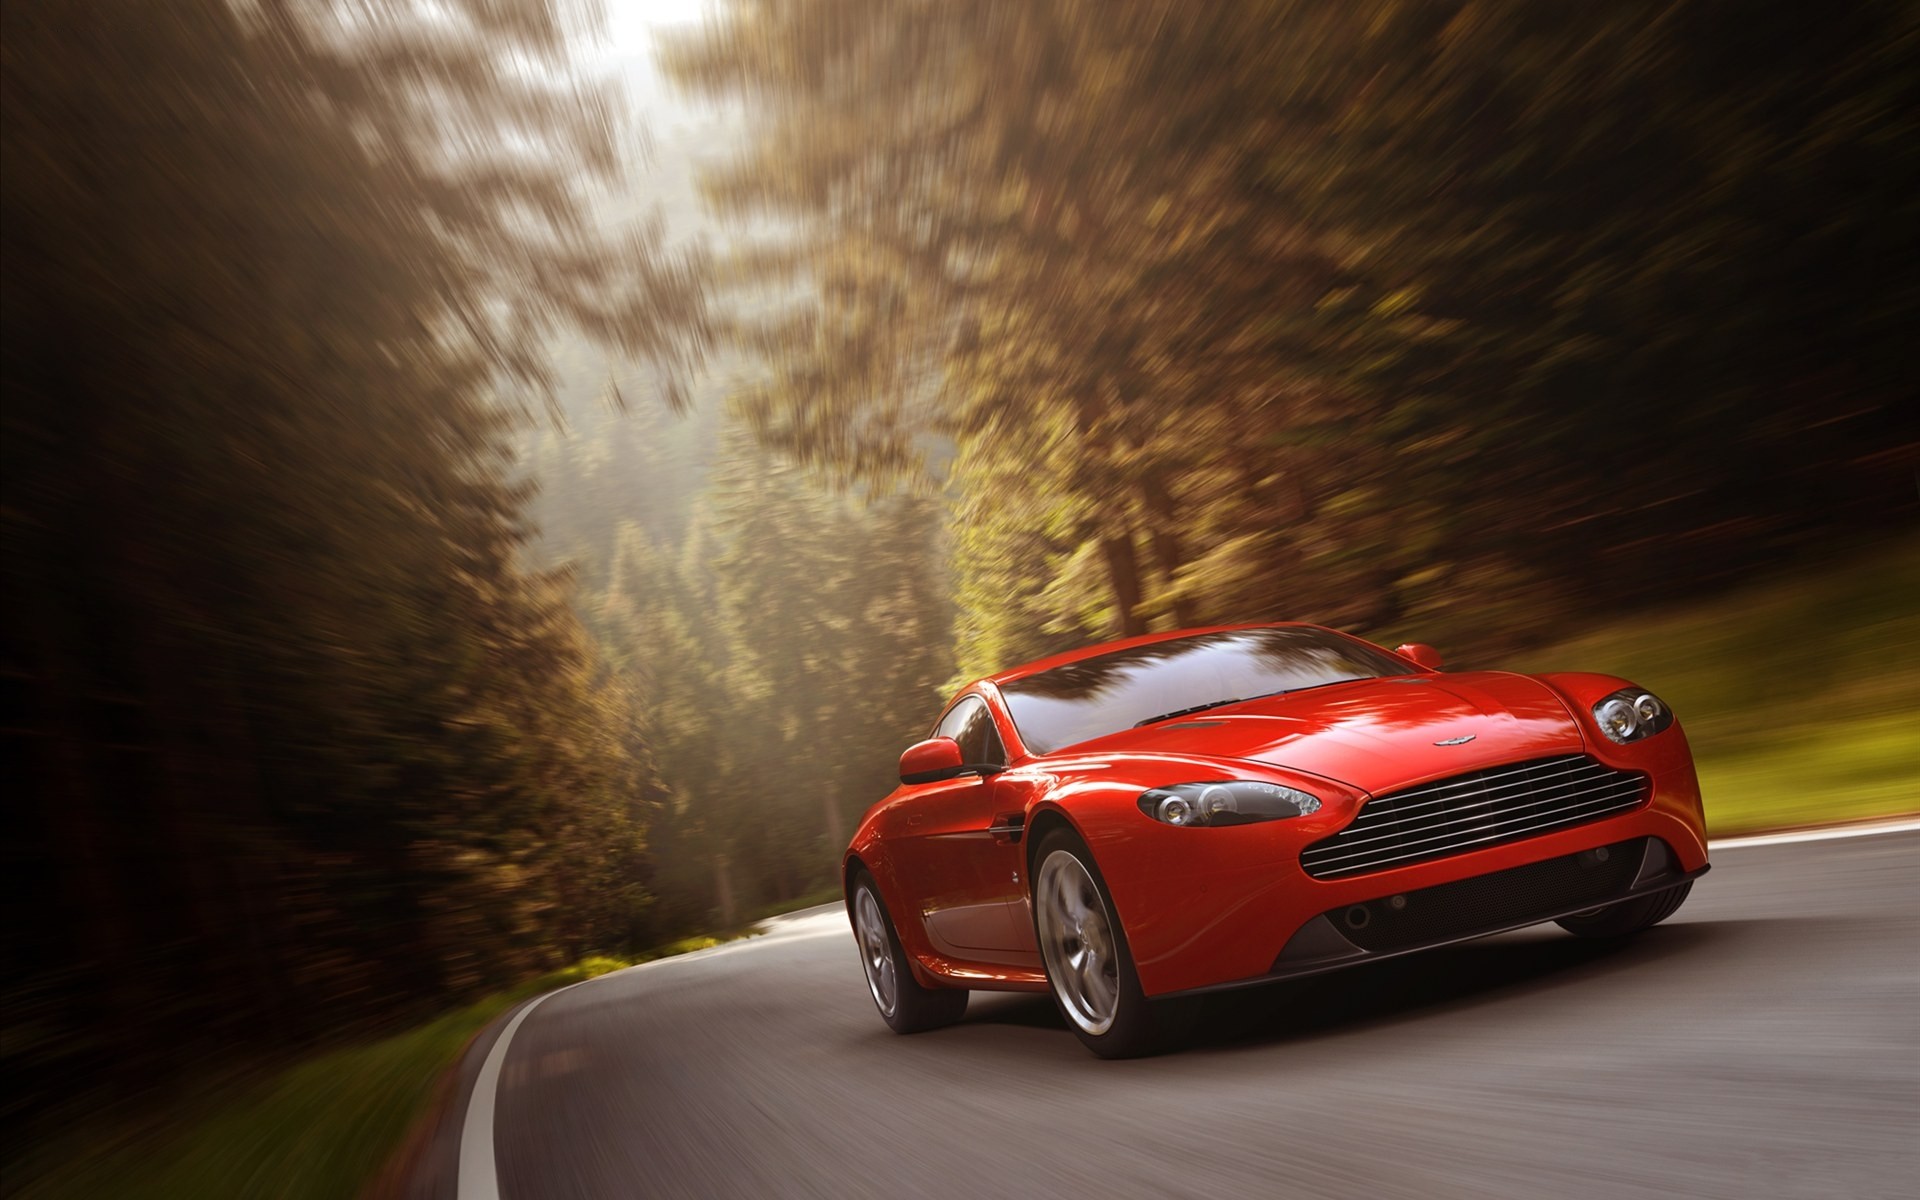  Aston Martin V8 Vantage Full HD Wallpaper